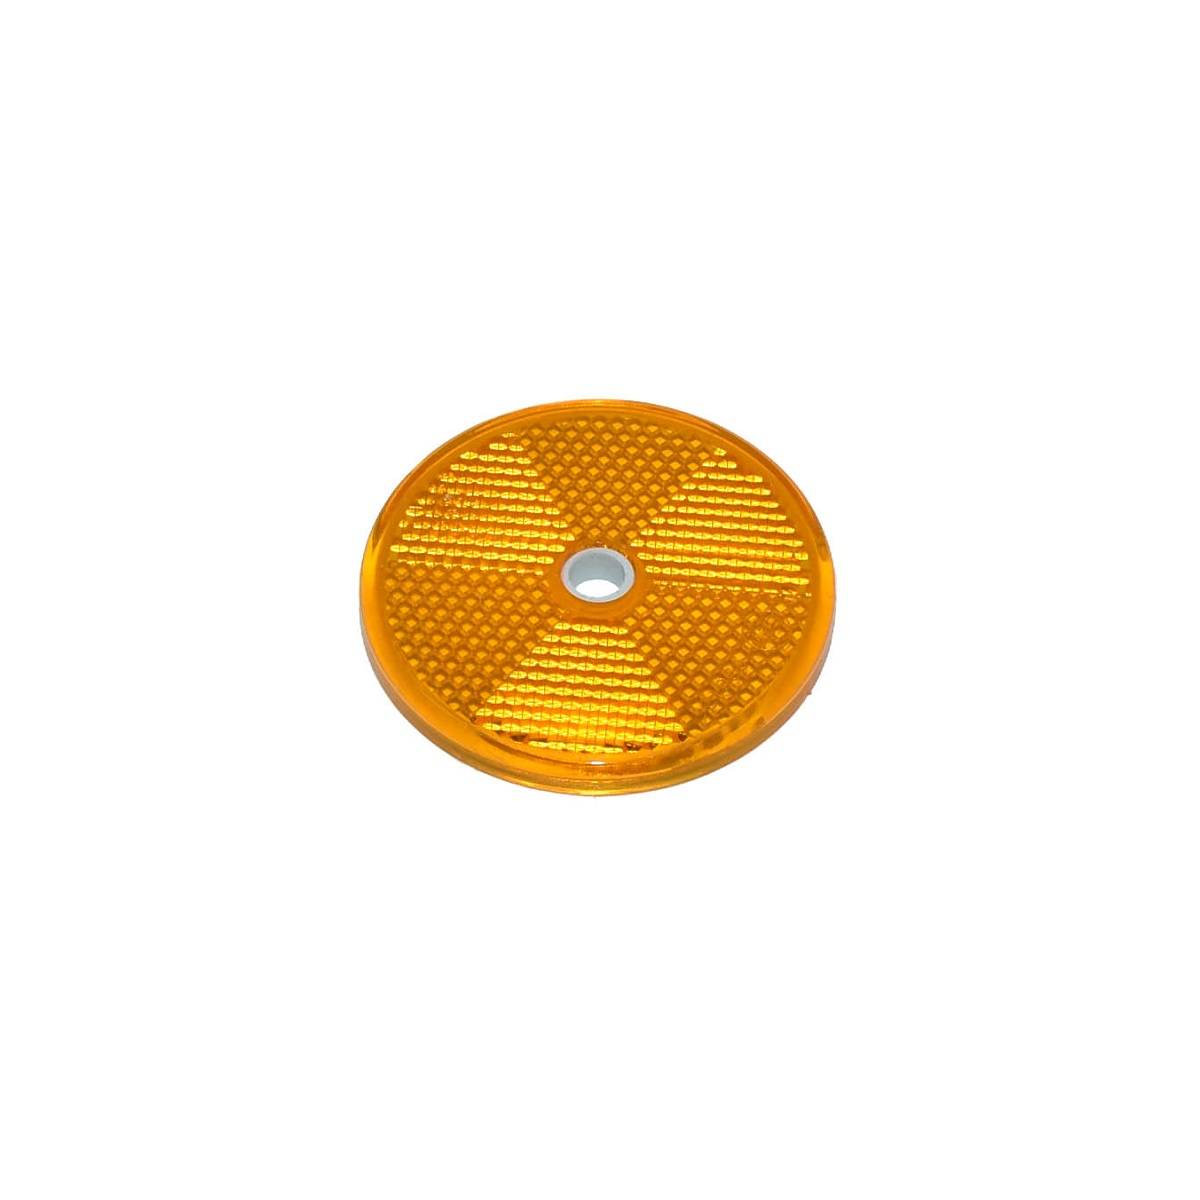 10x Aspöck Reflektor orange / gelb rund 60mm mit Schraubloch